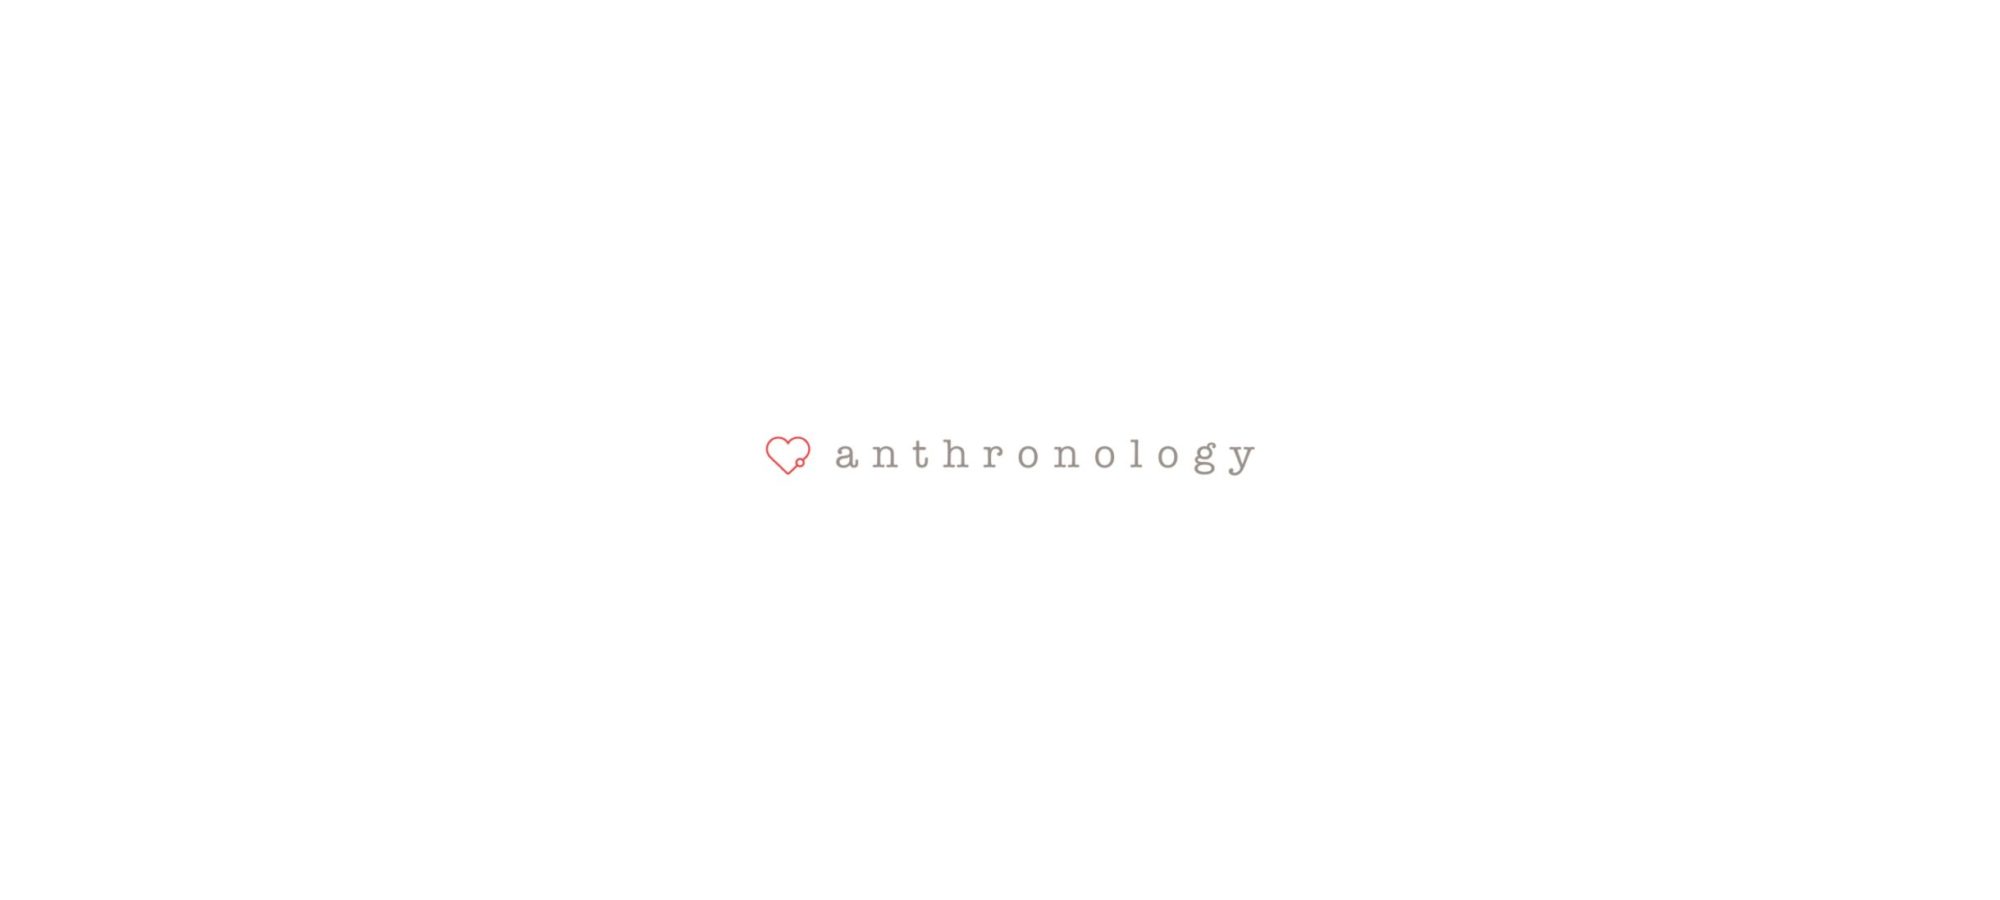 work-logos-anthronology